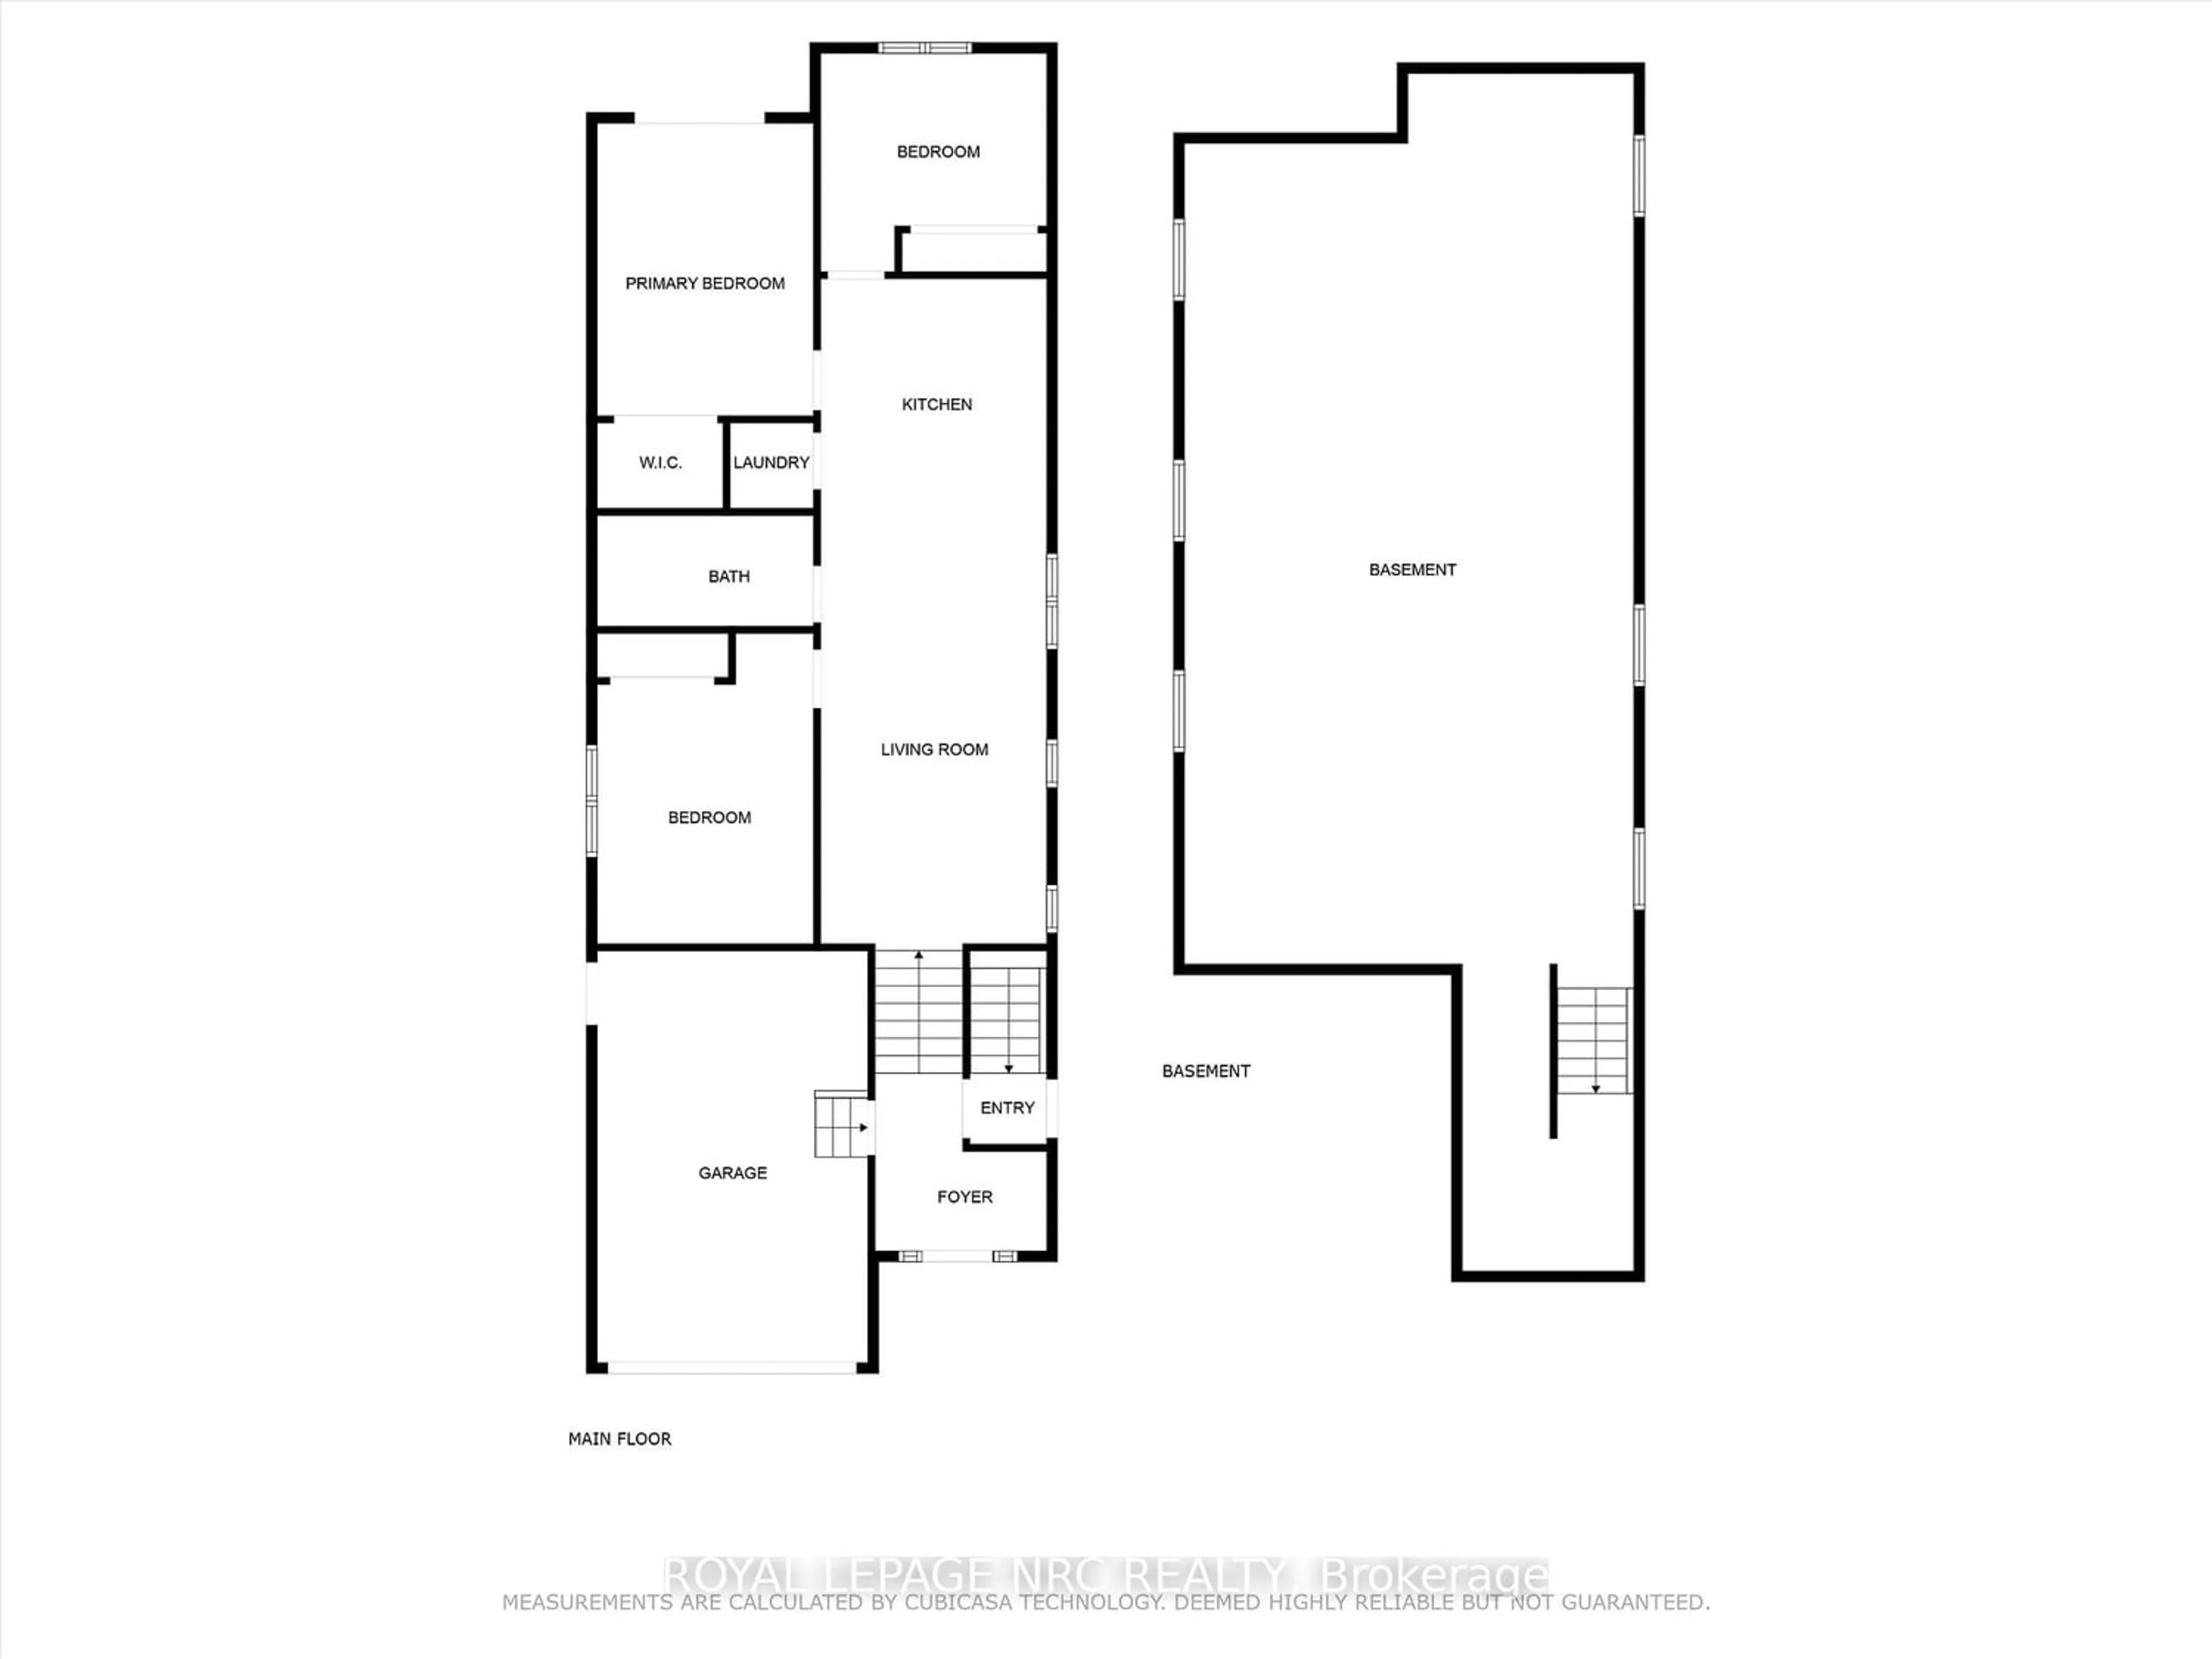 Floor plan for 137 St George St, Welland Ontario L3C 5N7